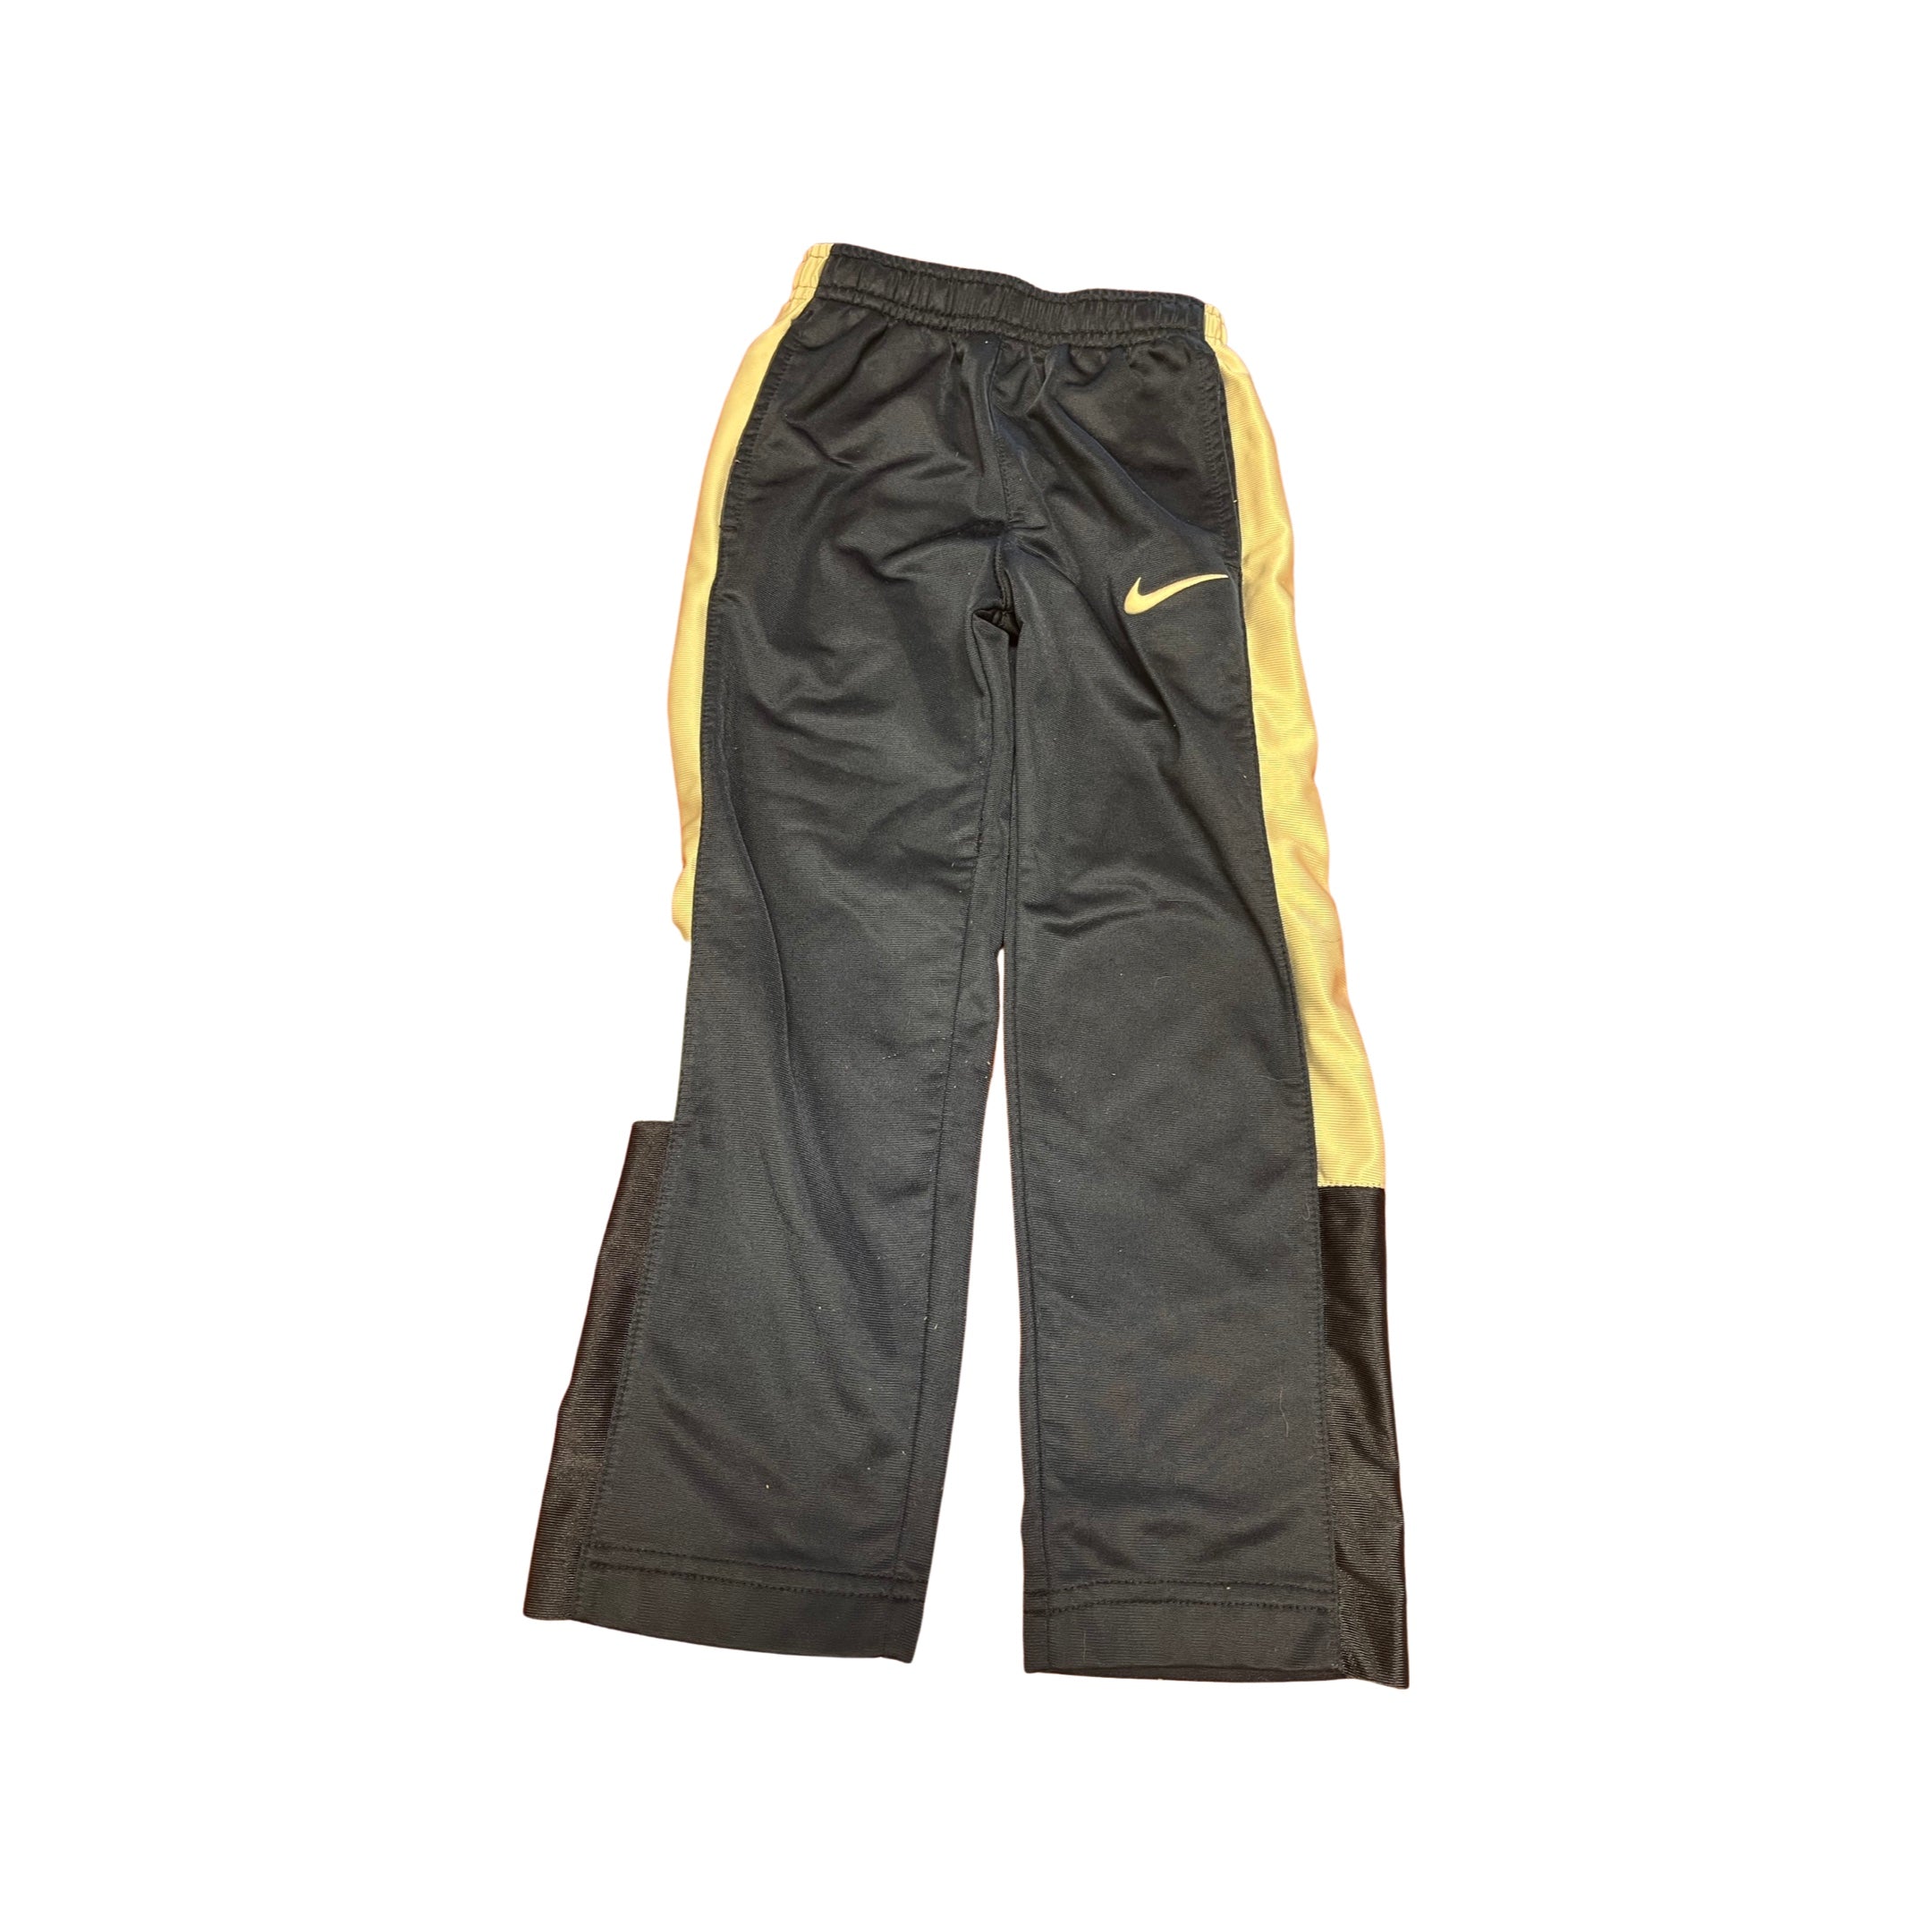 4T Blue Nike Pants – Dandelions Children's Resale